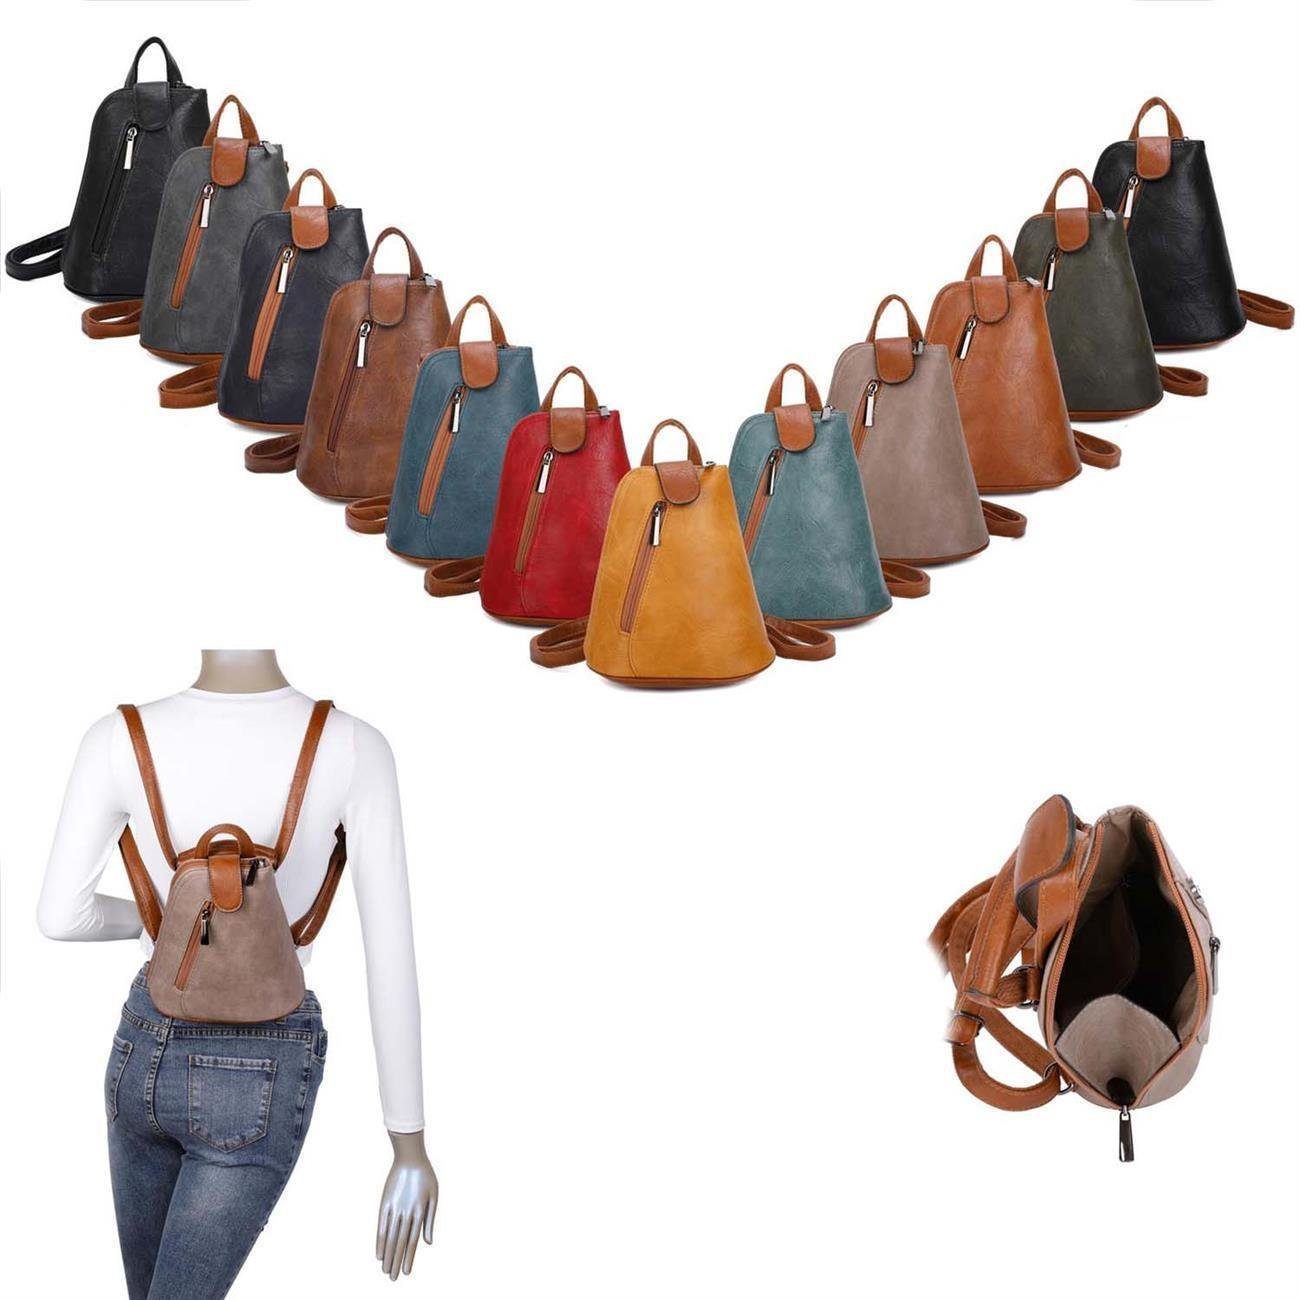 ITALYSHOP24 Rucksack Damen Crossover, kleiner Handtasche Umhängetasche tragbar Schultertasche / Schwarz Tasche Rucksack